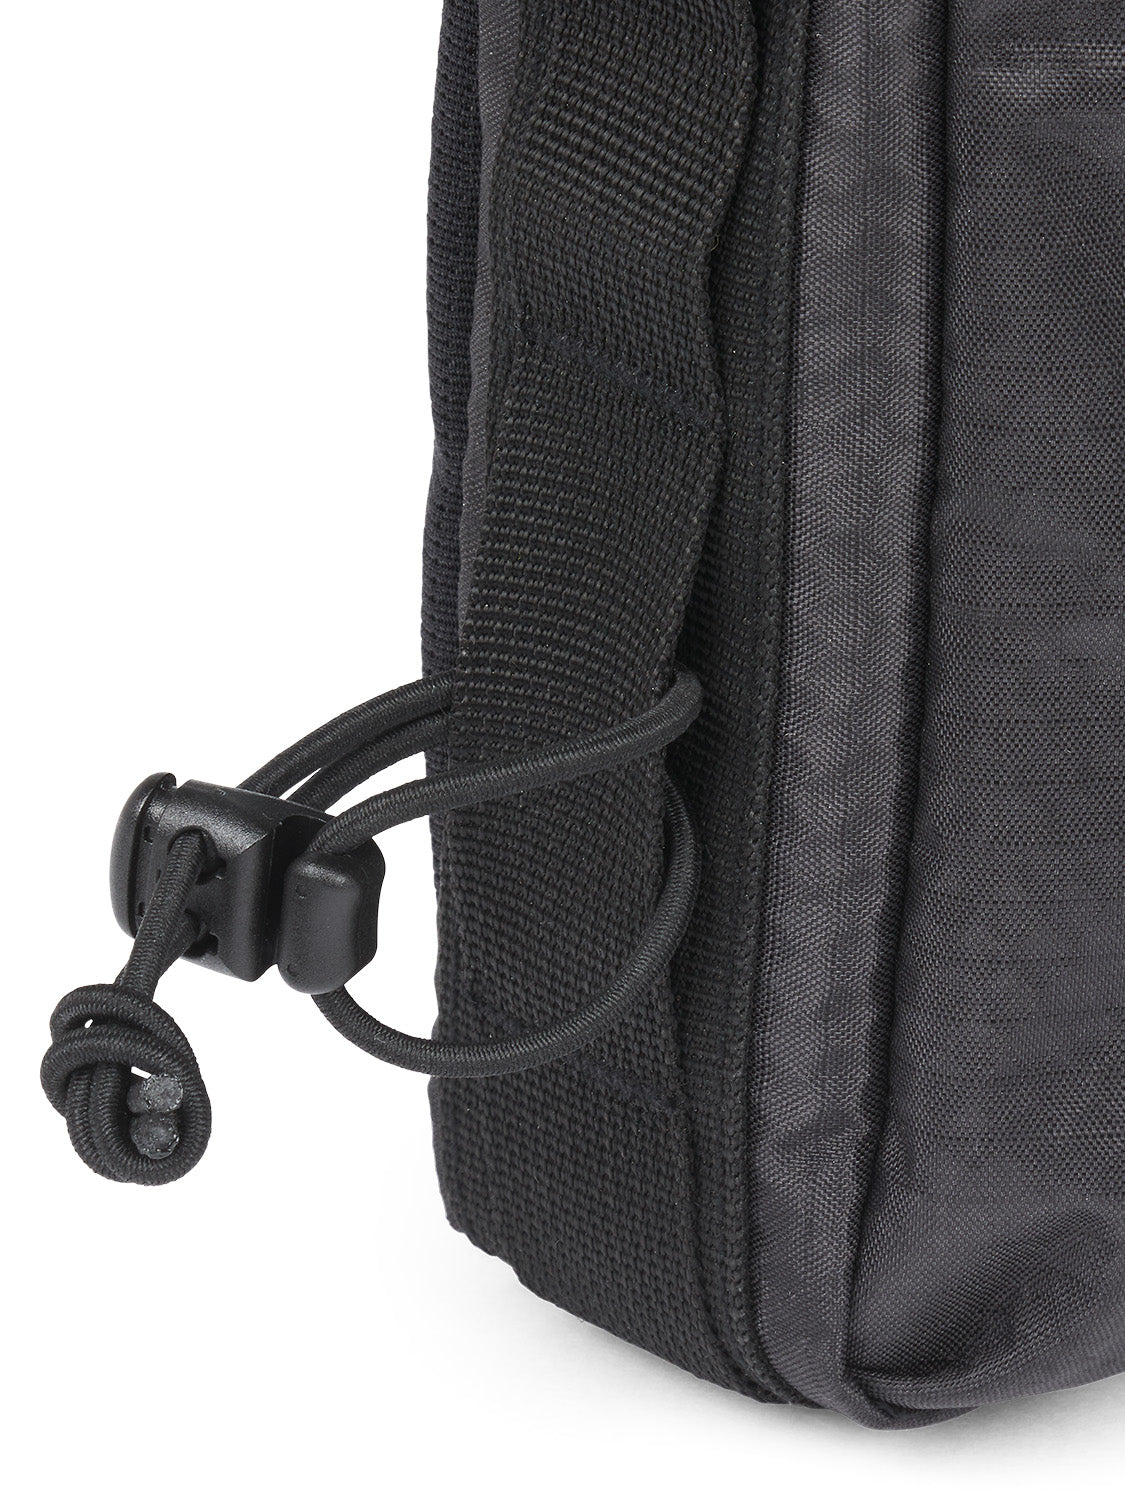 AEVOR-Frame-Bag-Large-Proof-Black-detail